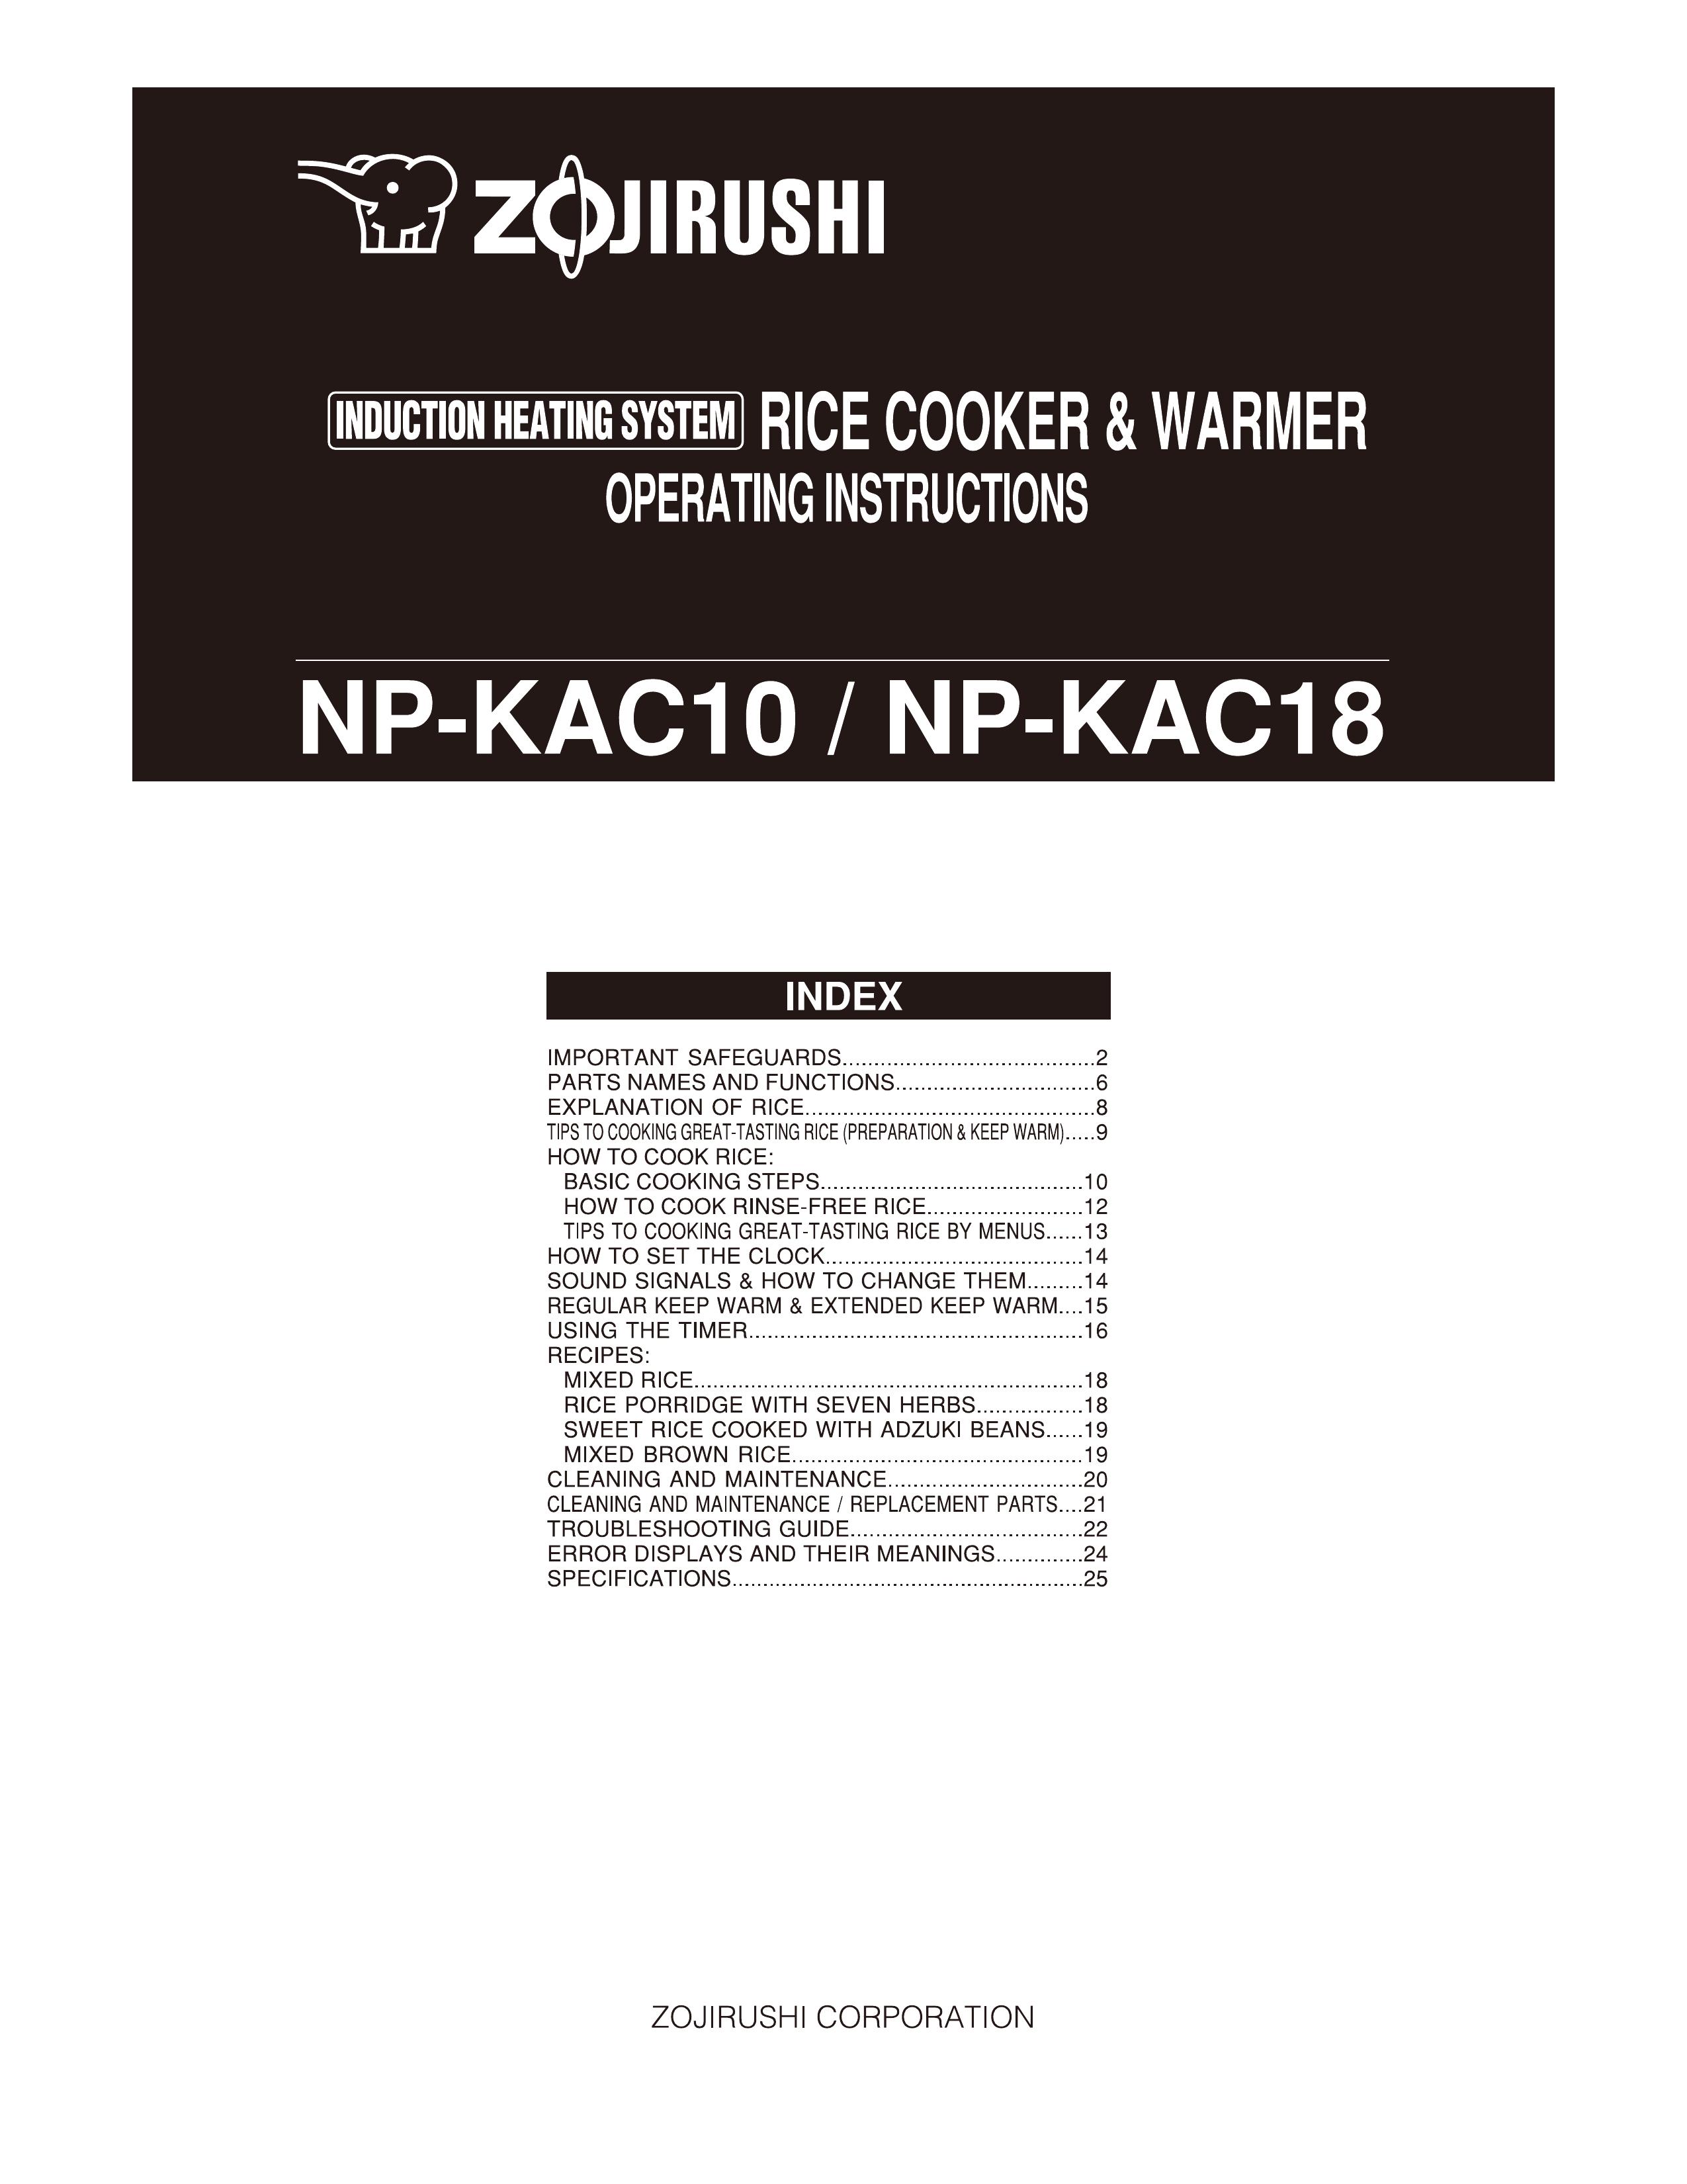 Zojirushi np-kac18 Rice Cooker User Manual